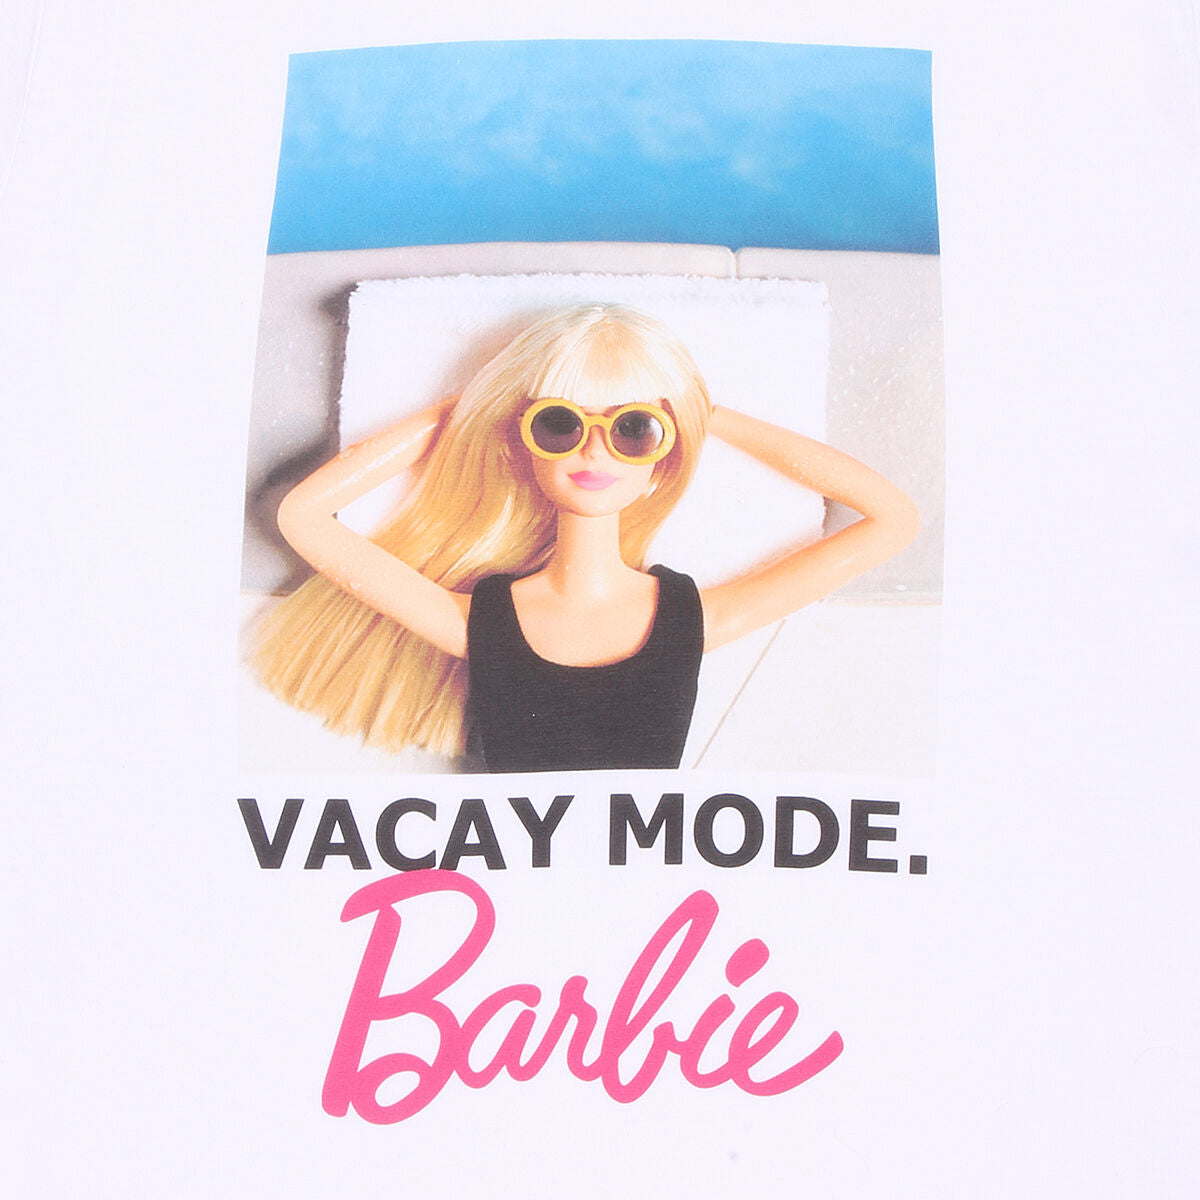 T shirt à manches courtes Barbie Vacay Mode Blanc Unisexe